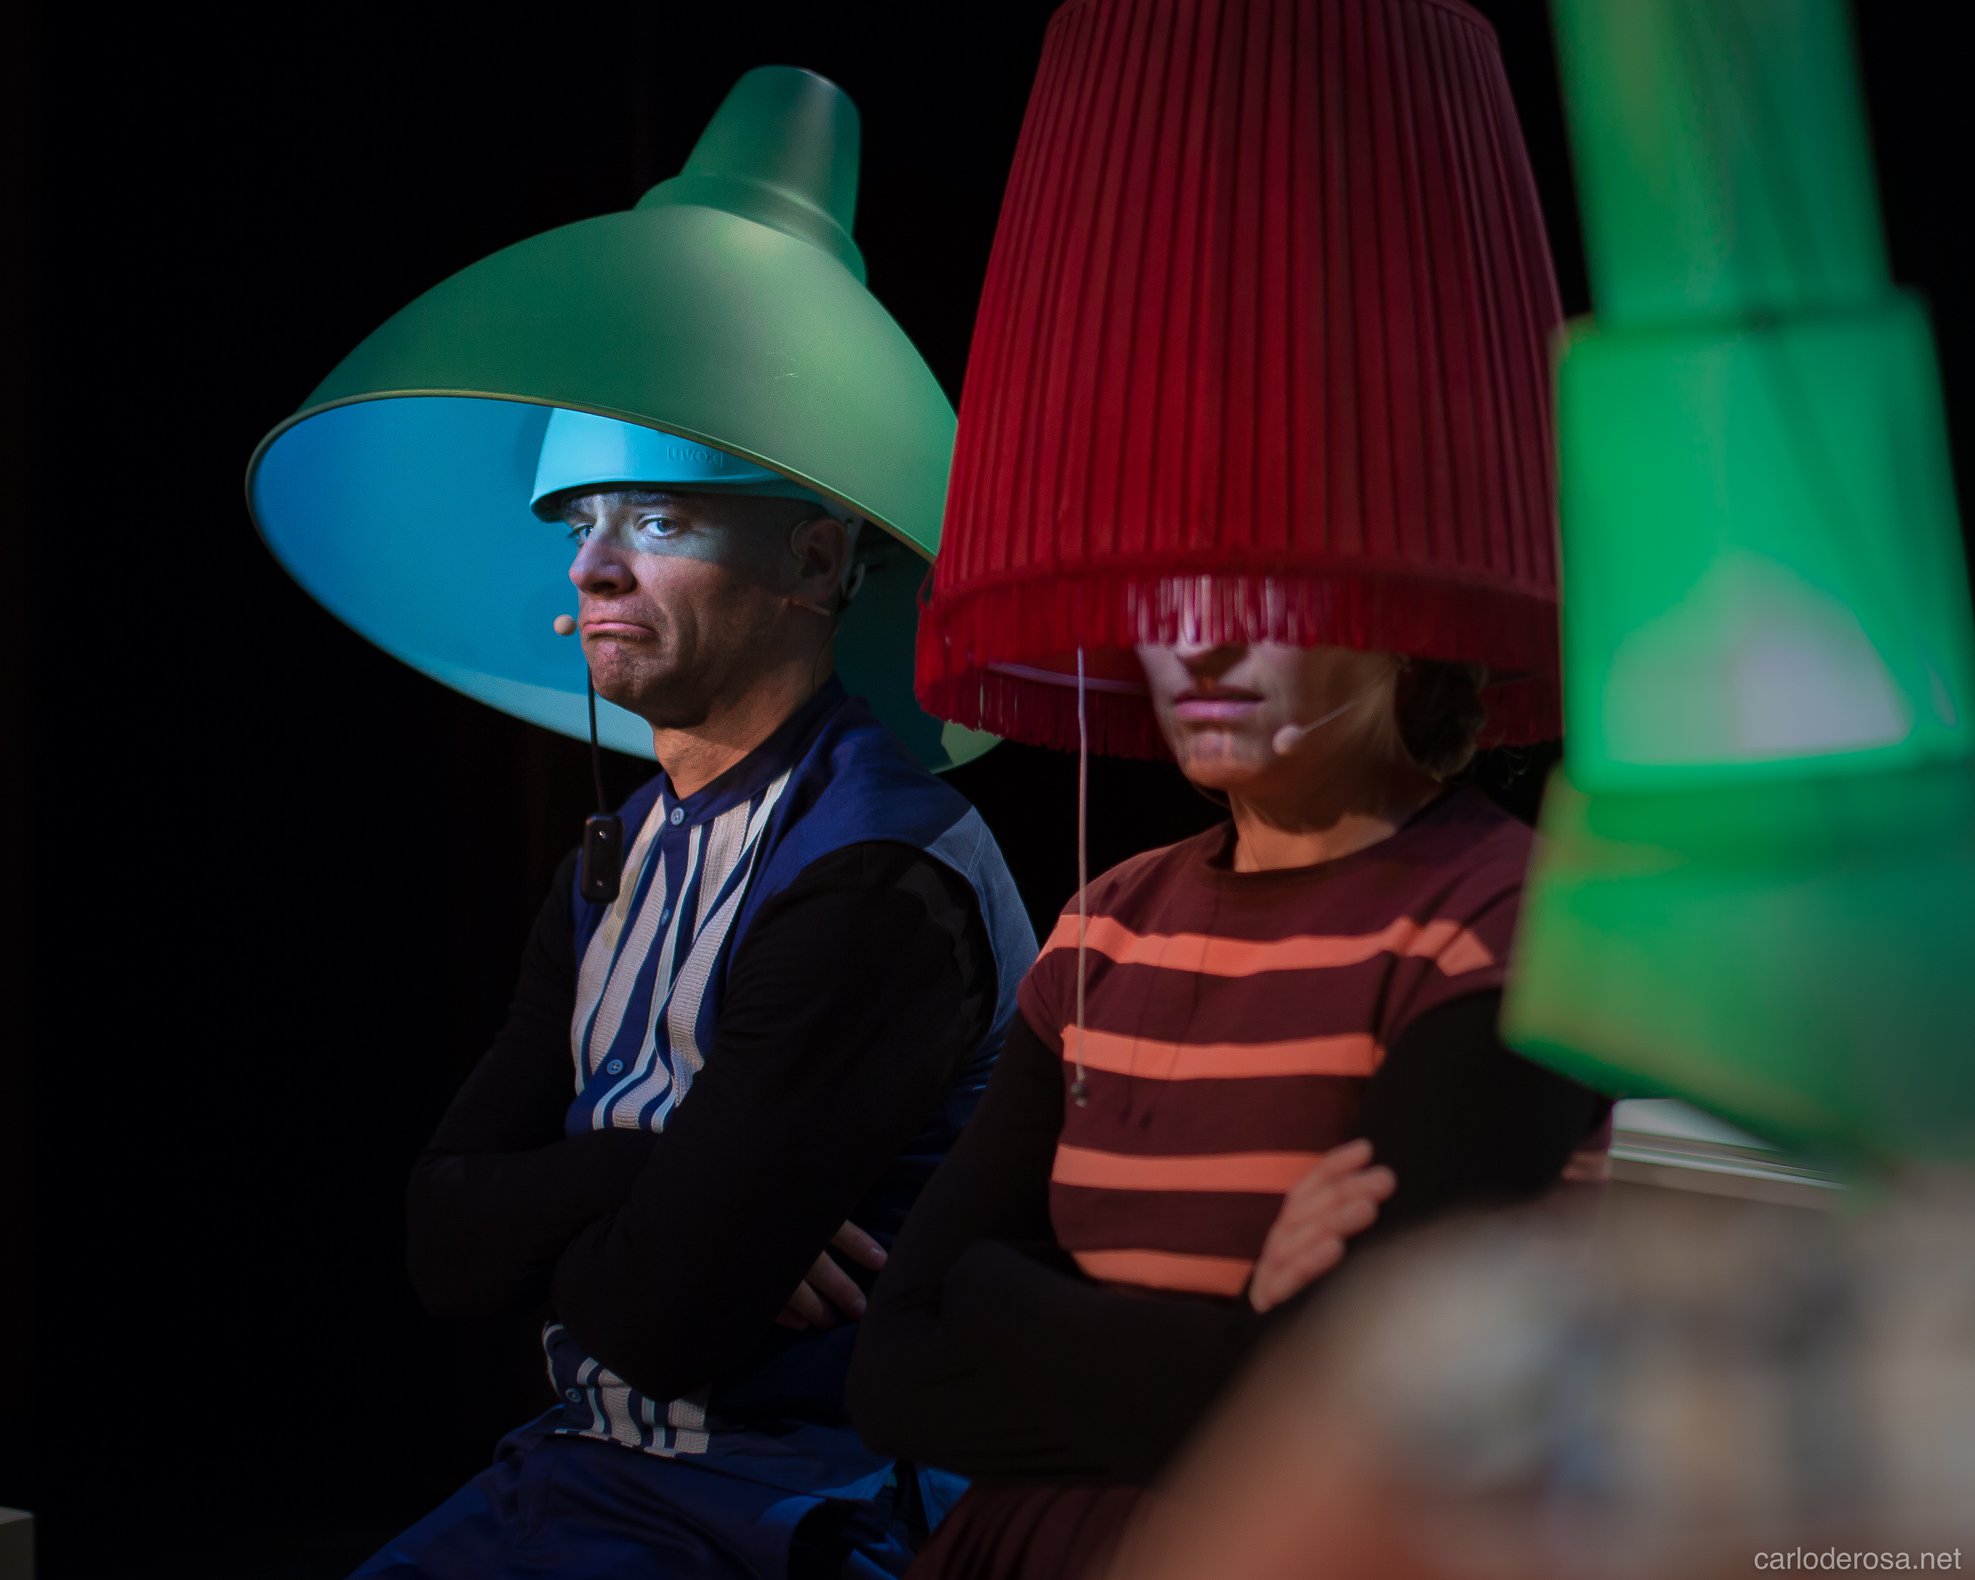 Deux comédiens avec des abat-jours de couleur sur la tête sons côte à côte et semblent fâchés. Il s'agit du papa-lampe et de la maman lampe, parents d'une famille recomposée de 4 petites-lampes.